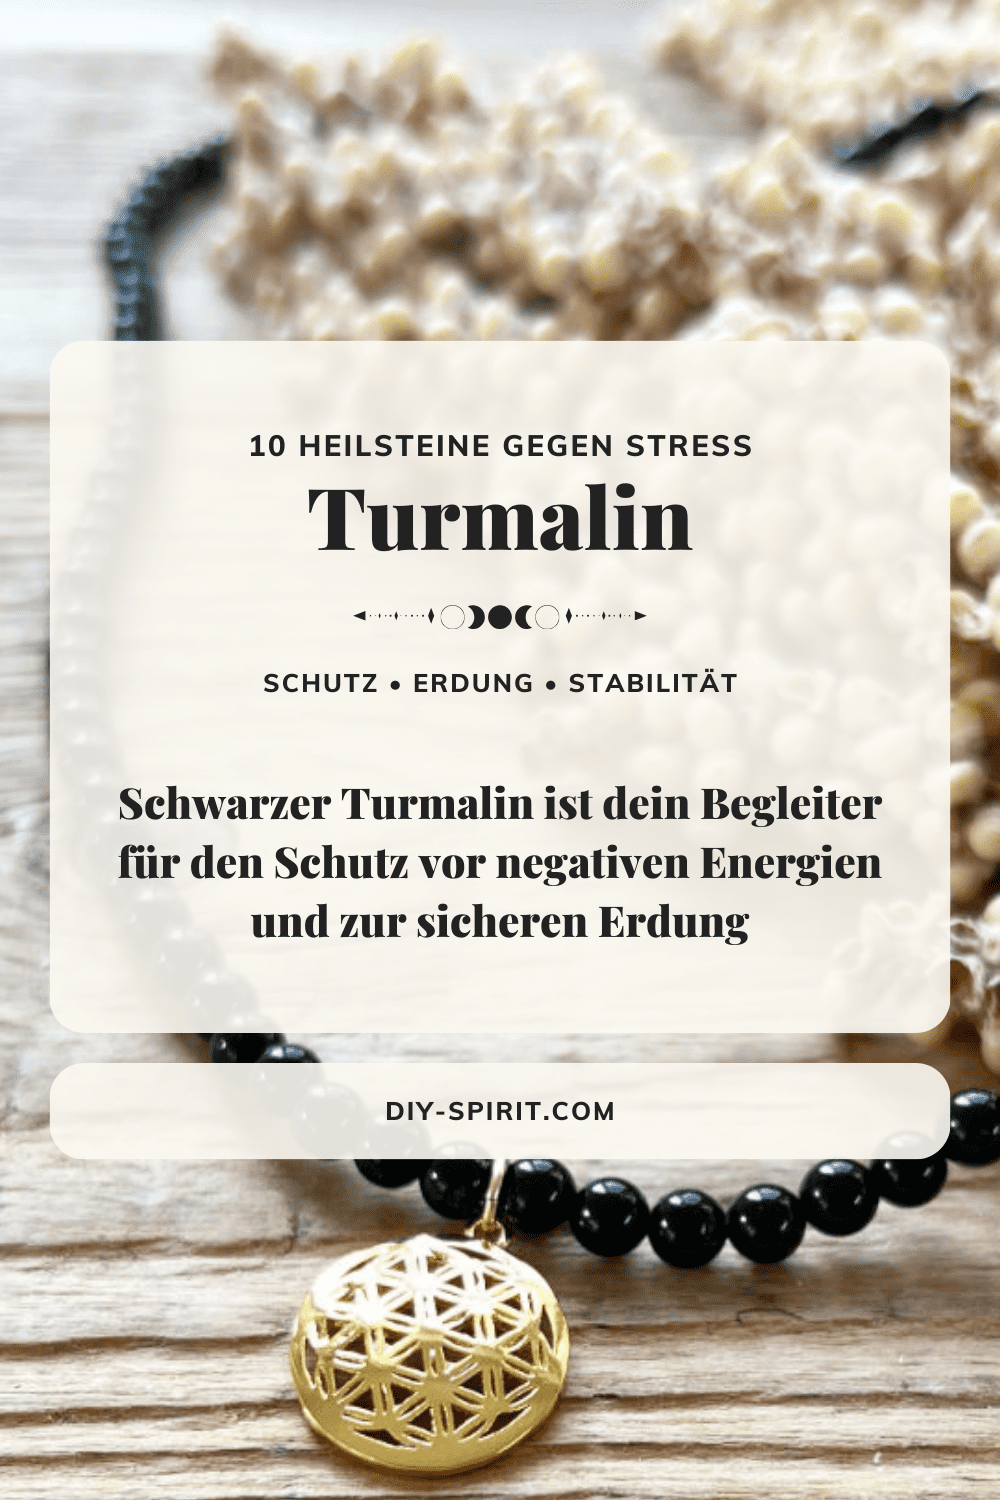 Turmalin - Heilstein gegen Stress